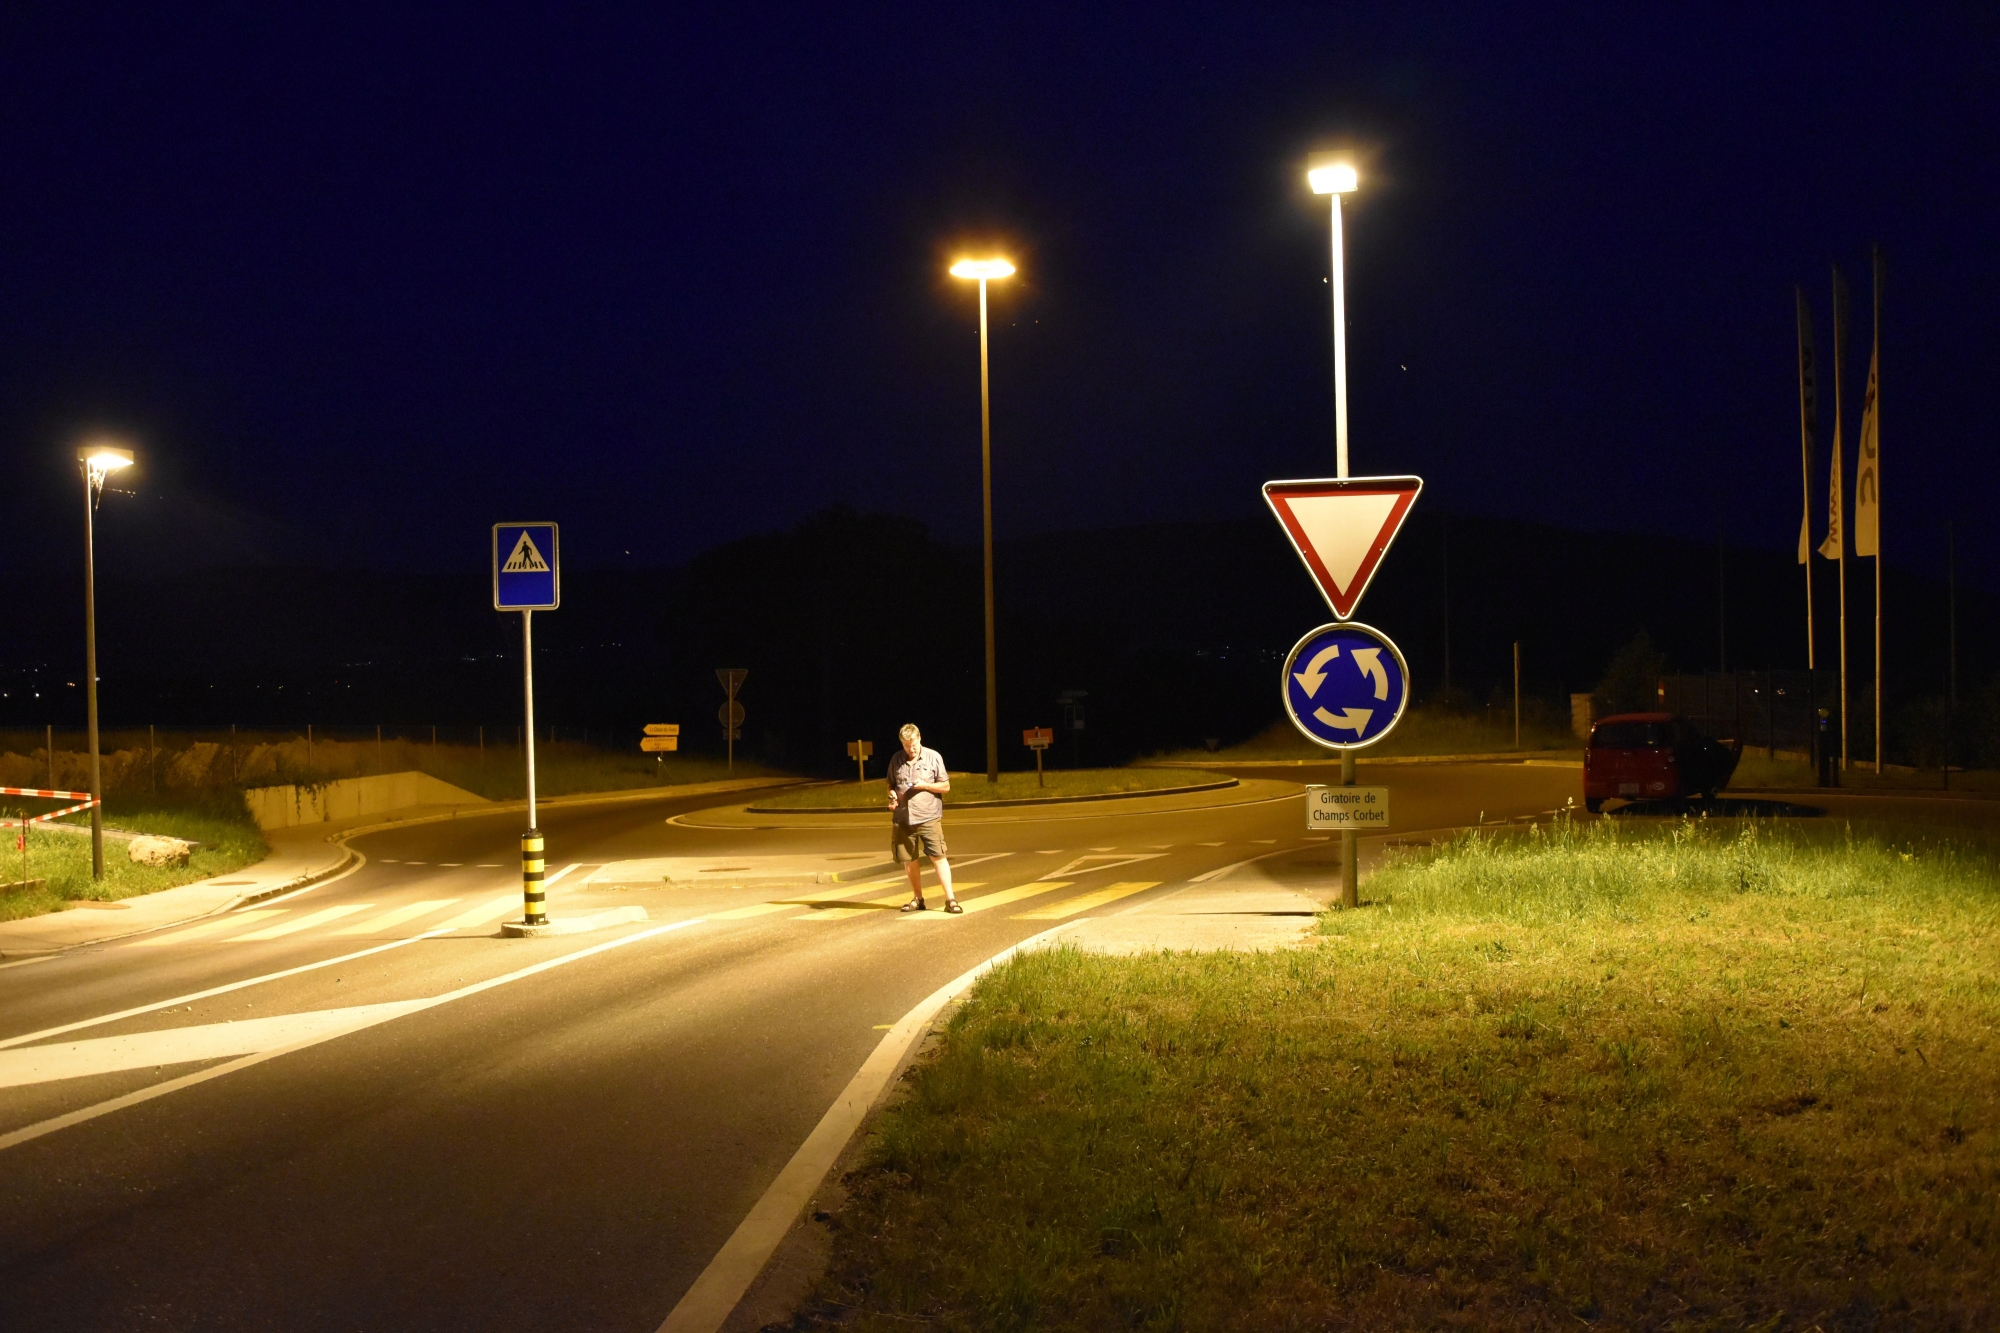 Fin juin, en pleine nuit, le député écologiste Laurent Debrot a mesuré l’intensité lumineuse sur le passage pour piétons situé devant le Service cantonal des automobiles, à Malvilliers.